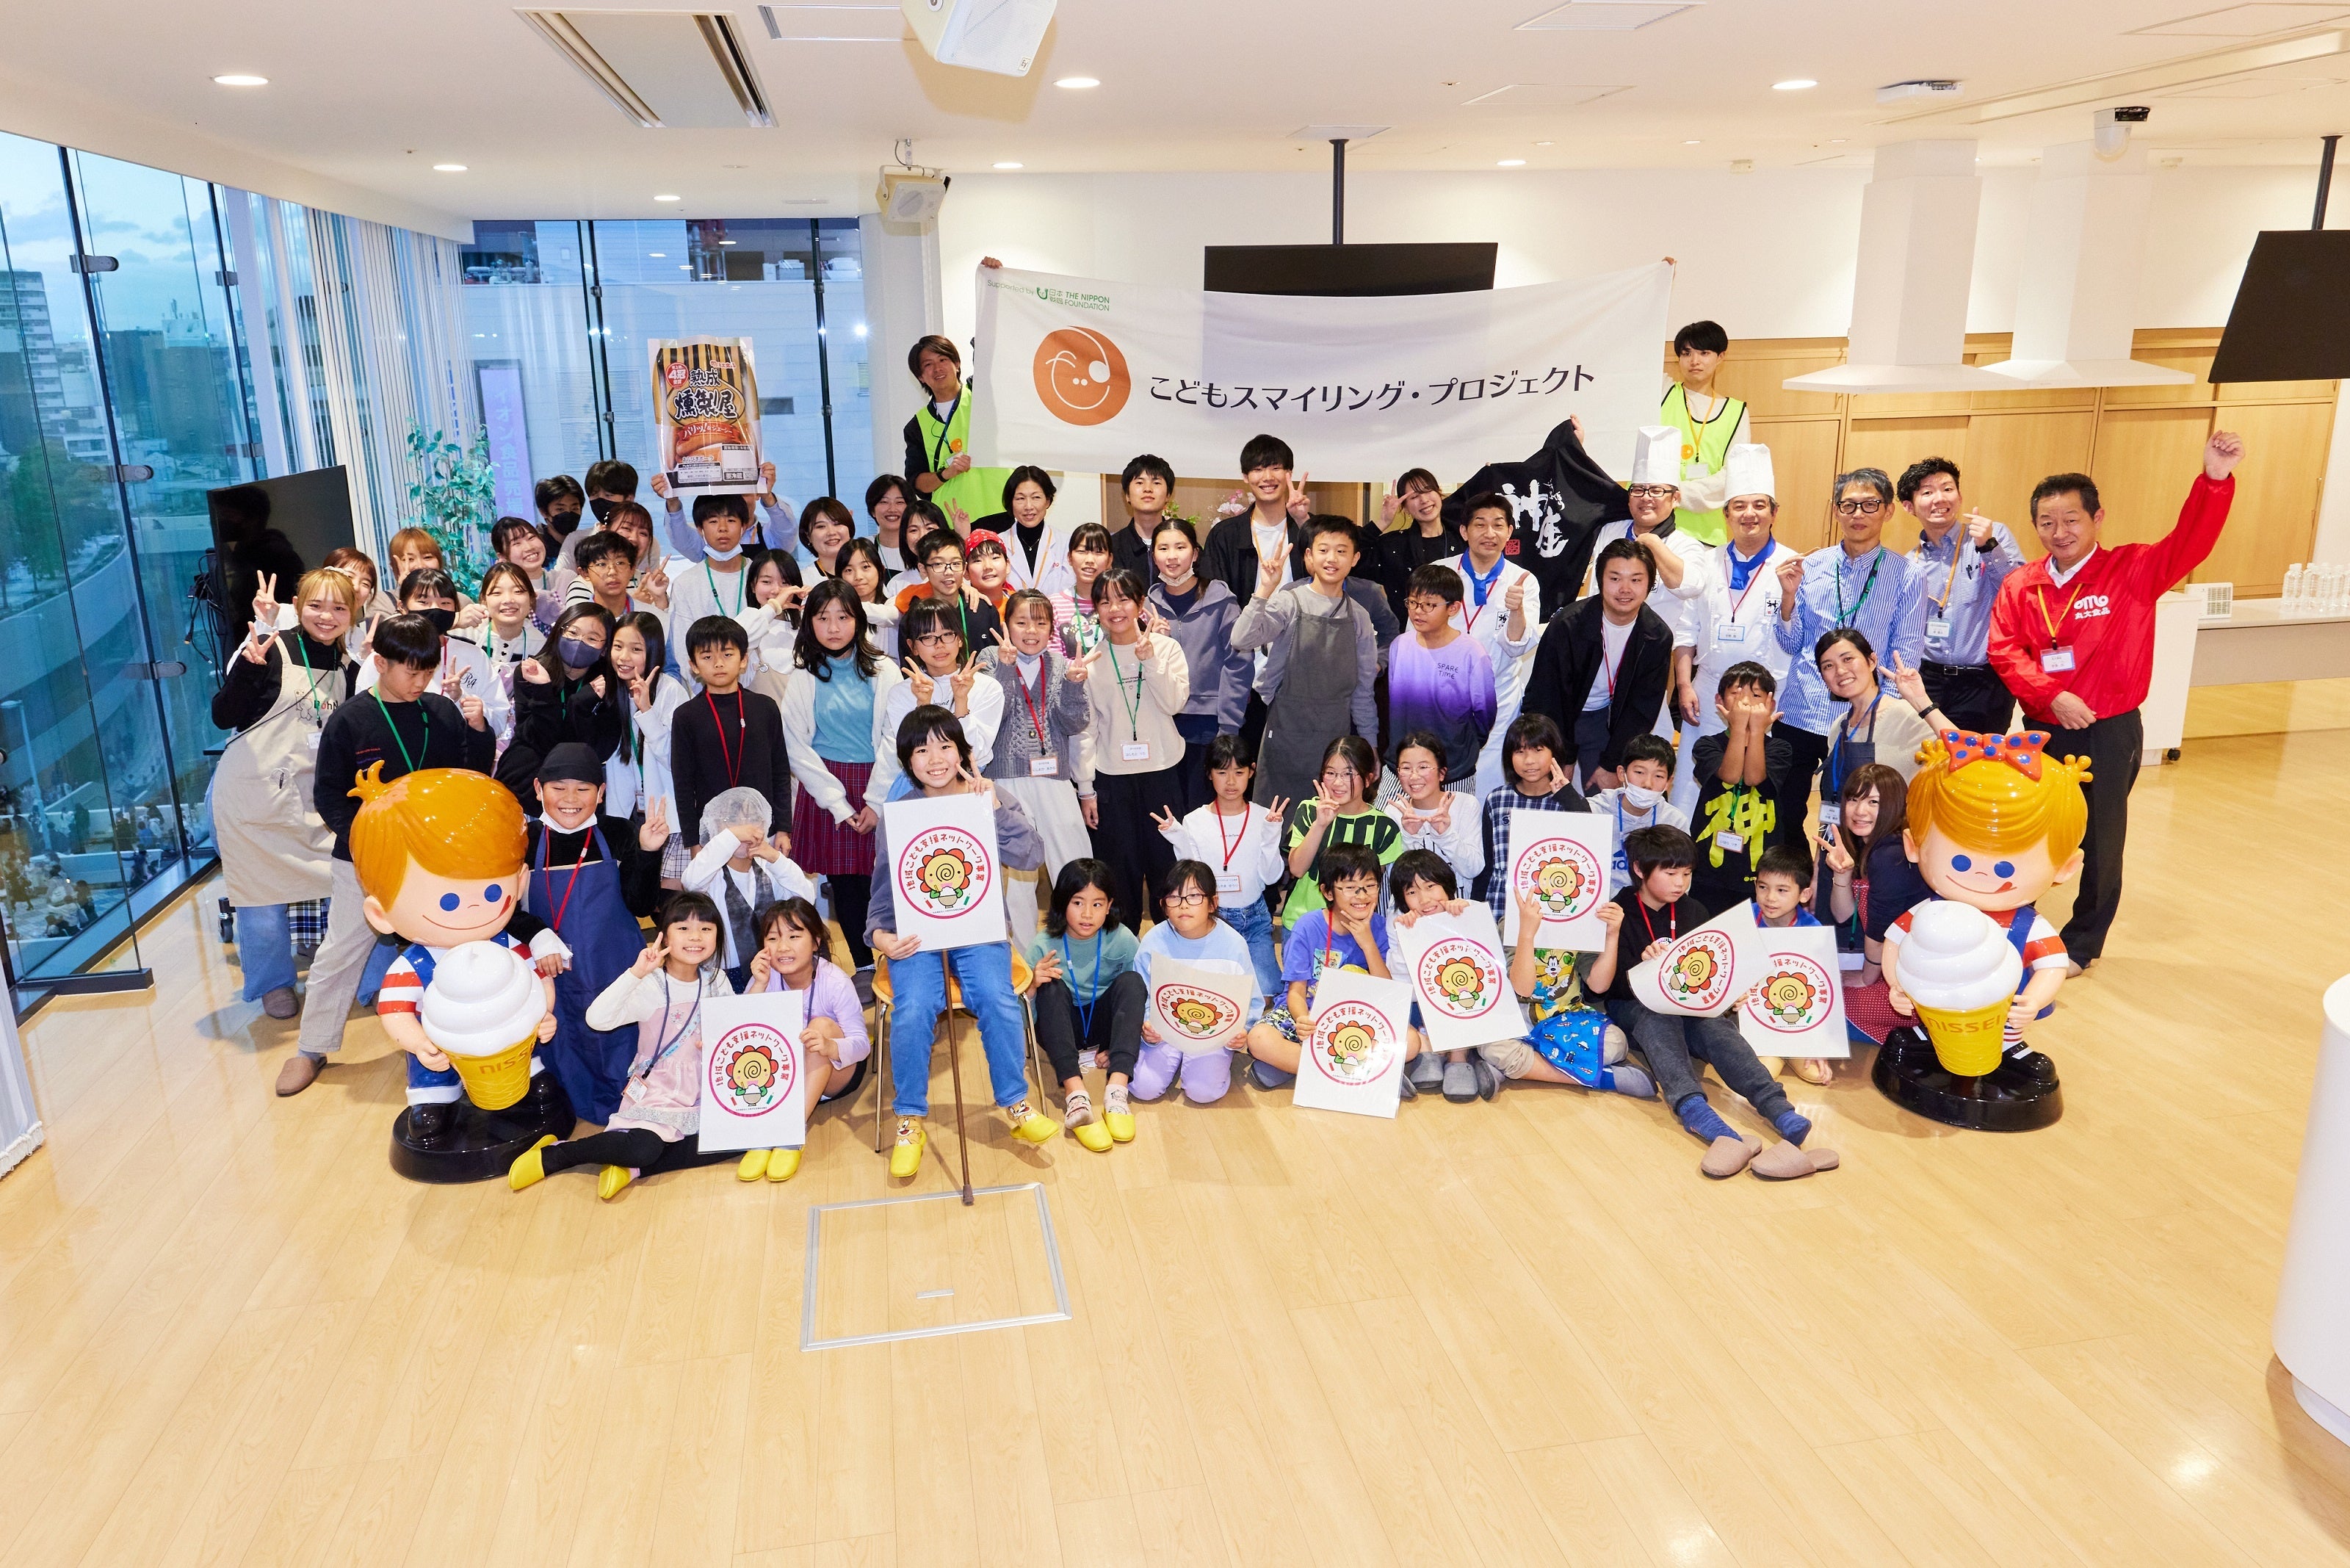 大阪市内の子どもたちがエシカル消費や食を支える仕事を企業から学ぶ「こどもフードエシカルクッキング講座」を開催しました